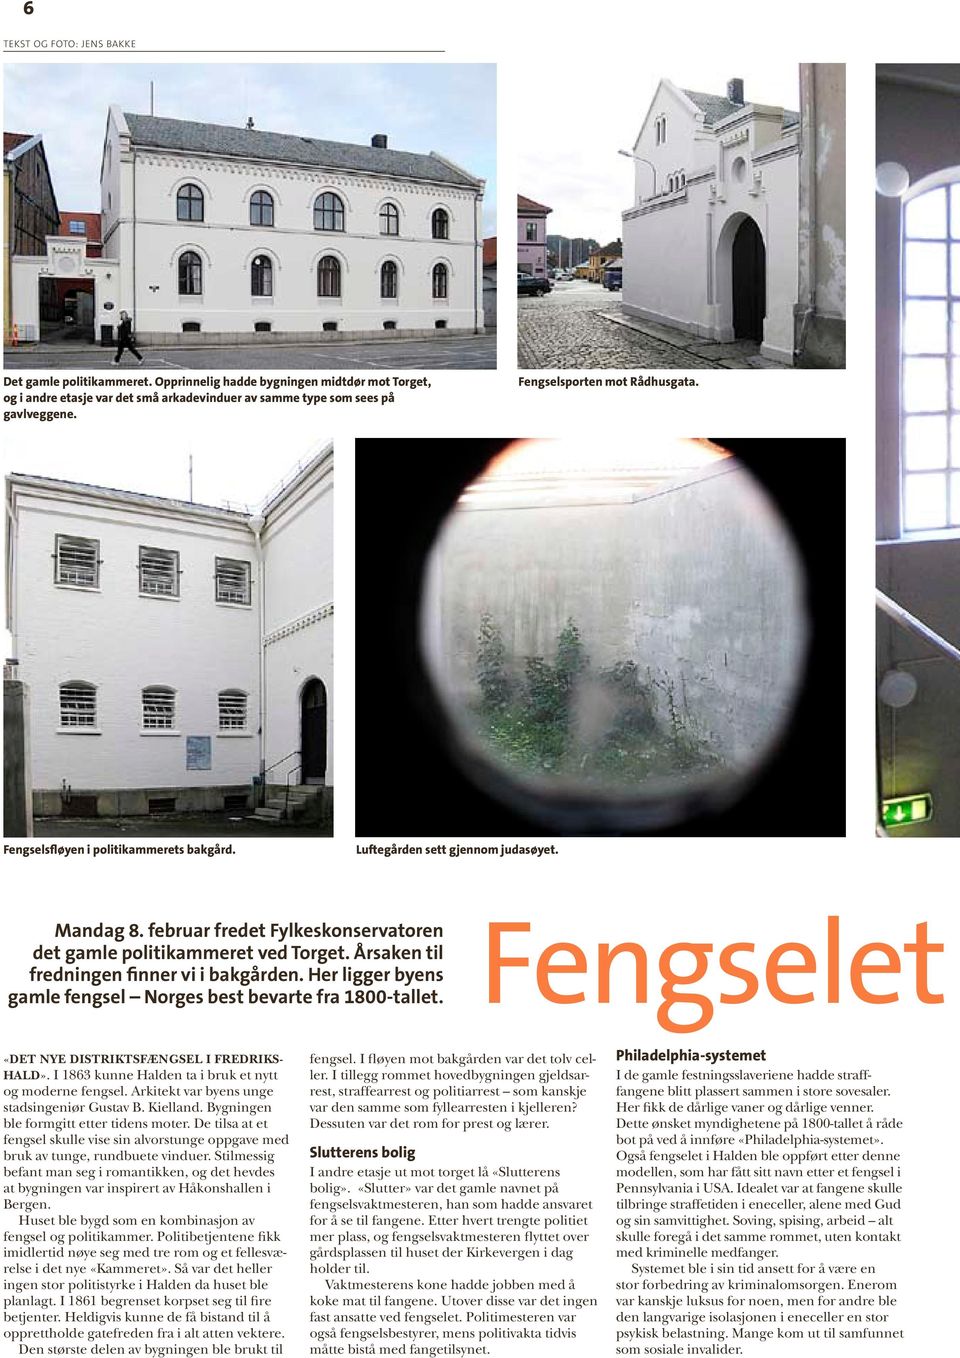 Årsaken til fredningen finner vi i bakgården. Her ligger byens gamle fengsel Norges best bevarte fra 1800-tallet. Fengselet «Det nye Distriktsfængsel i Fredrikshald».